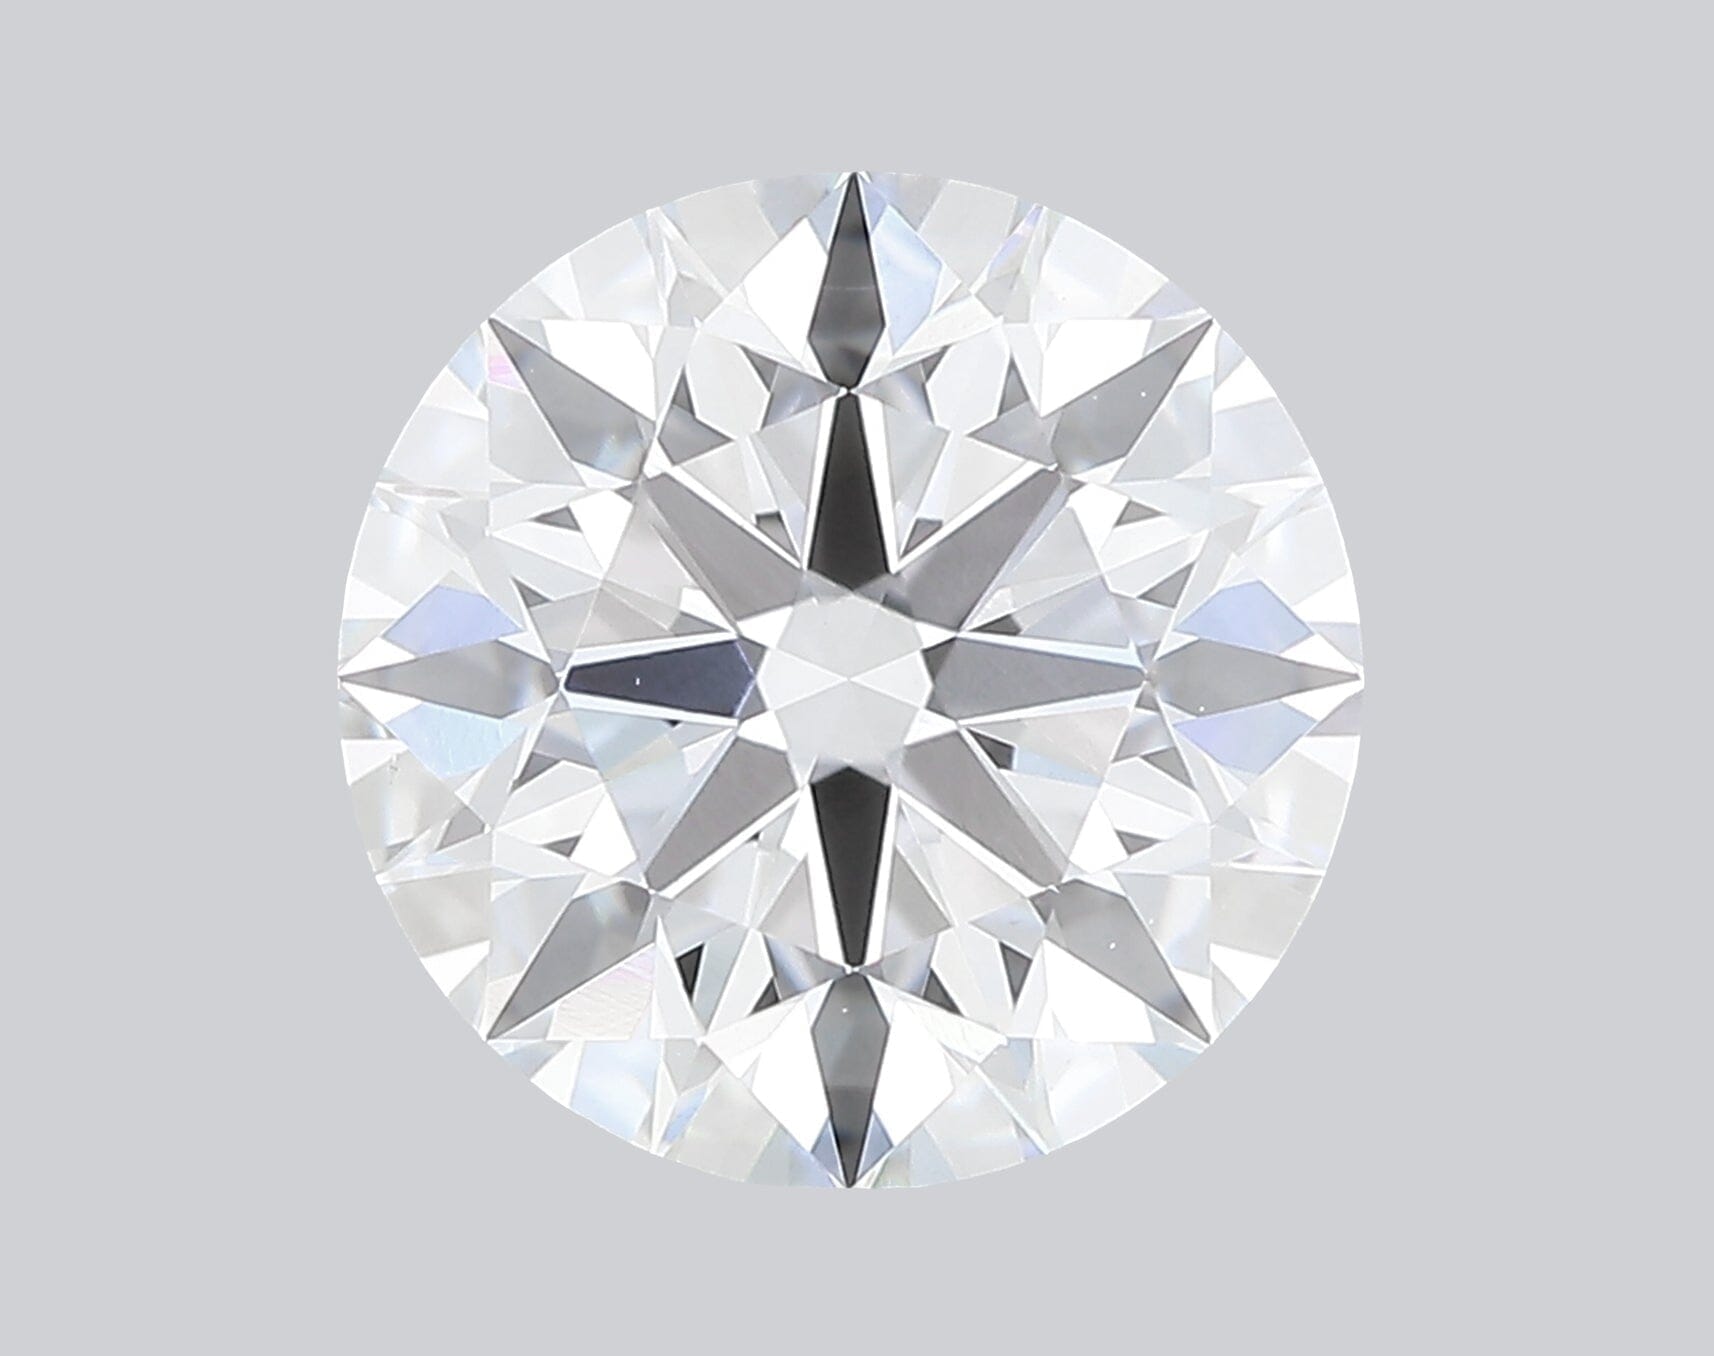 Custom Engagement Ring for Brian (4-21-24 js) Pending Princess Bride Diamonds 